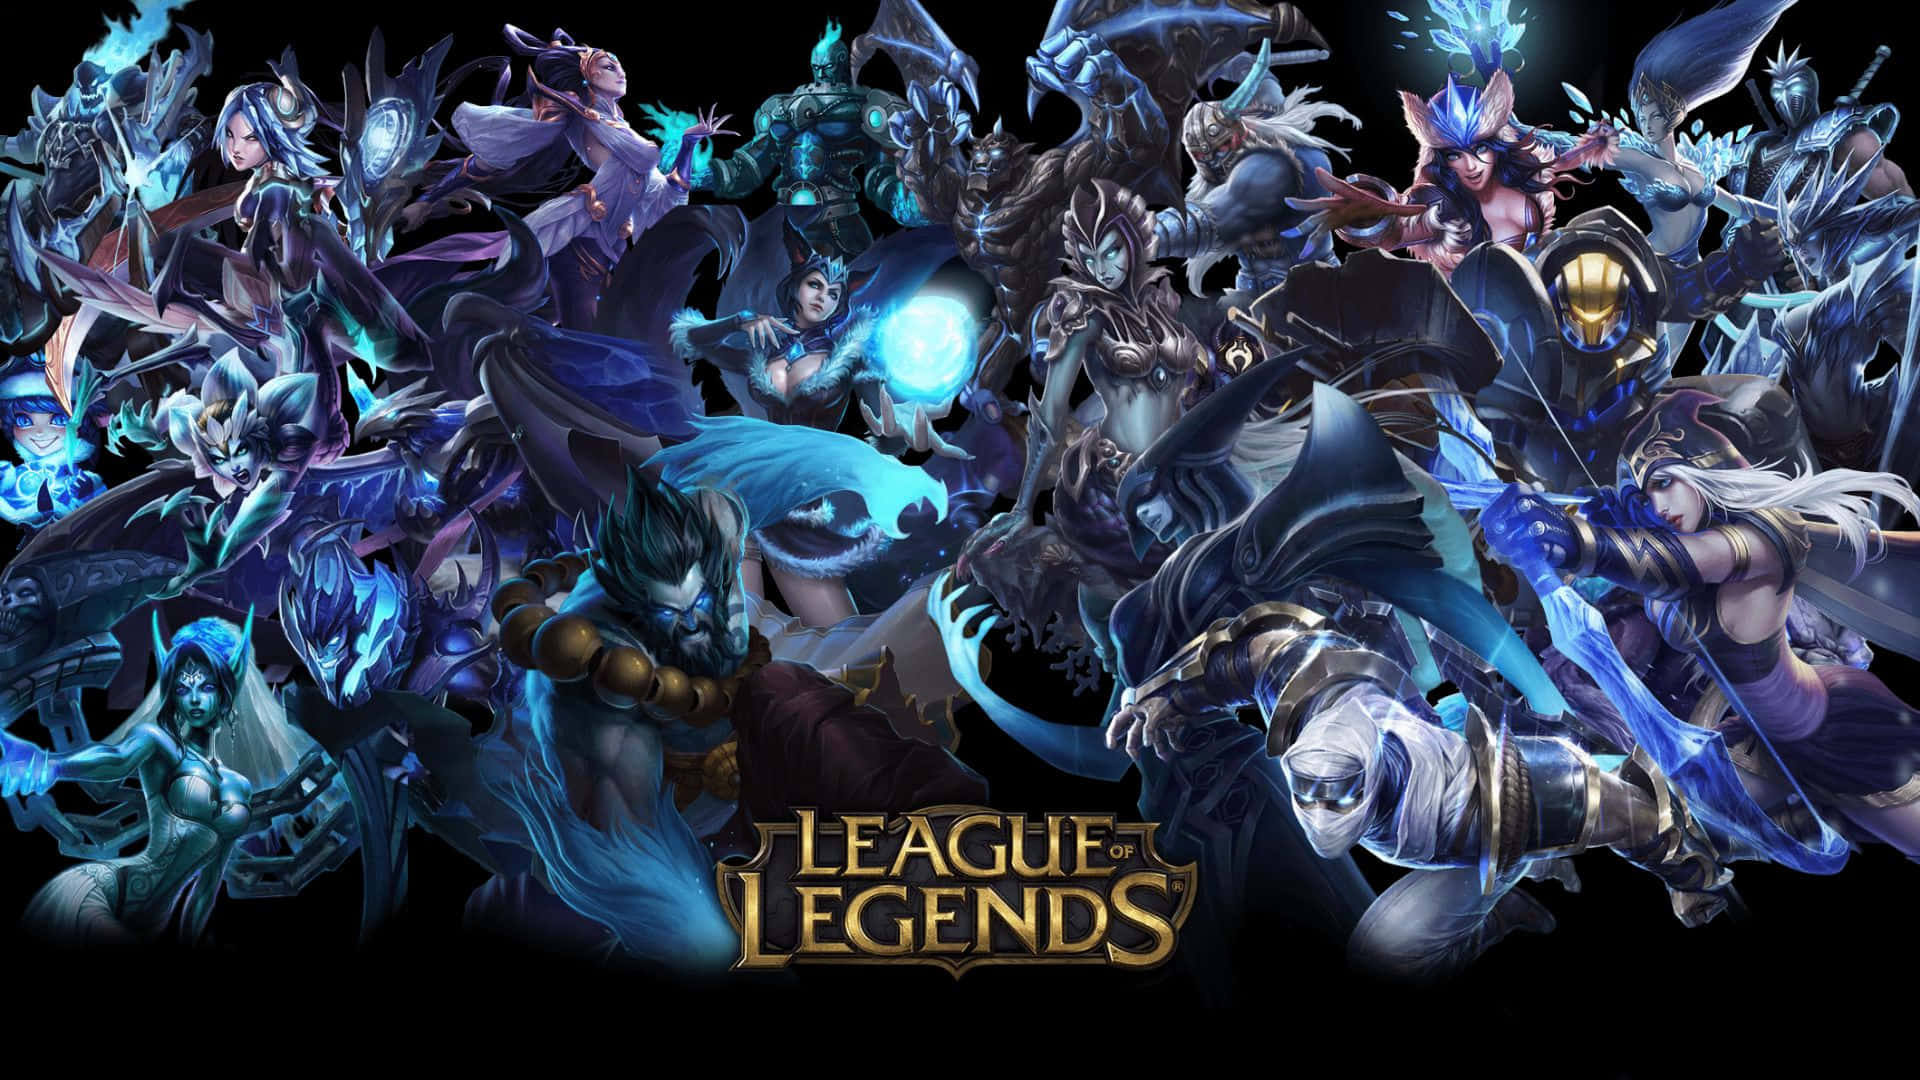 Bildunder En Fullmåne Strider Karaktärer Från League Of Legends